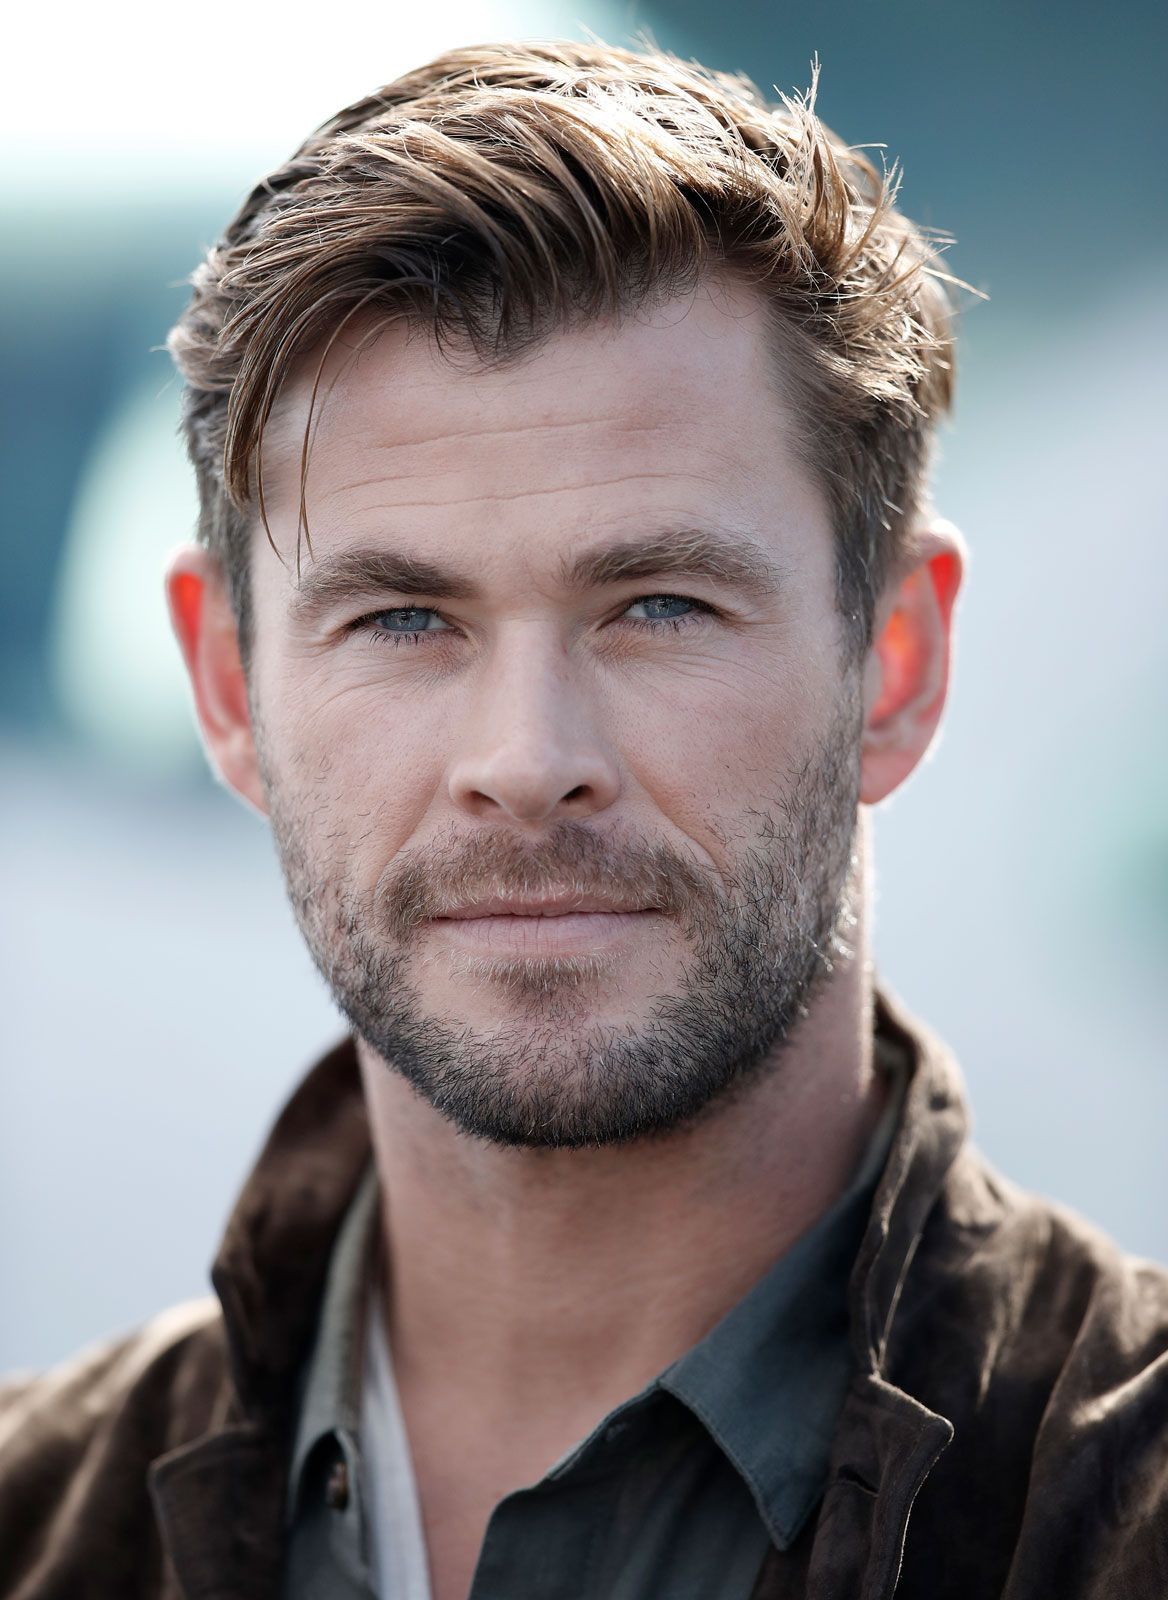 Muere el actor Crish Hemsworth a sus 39 años de edad.